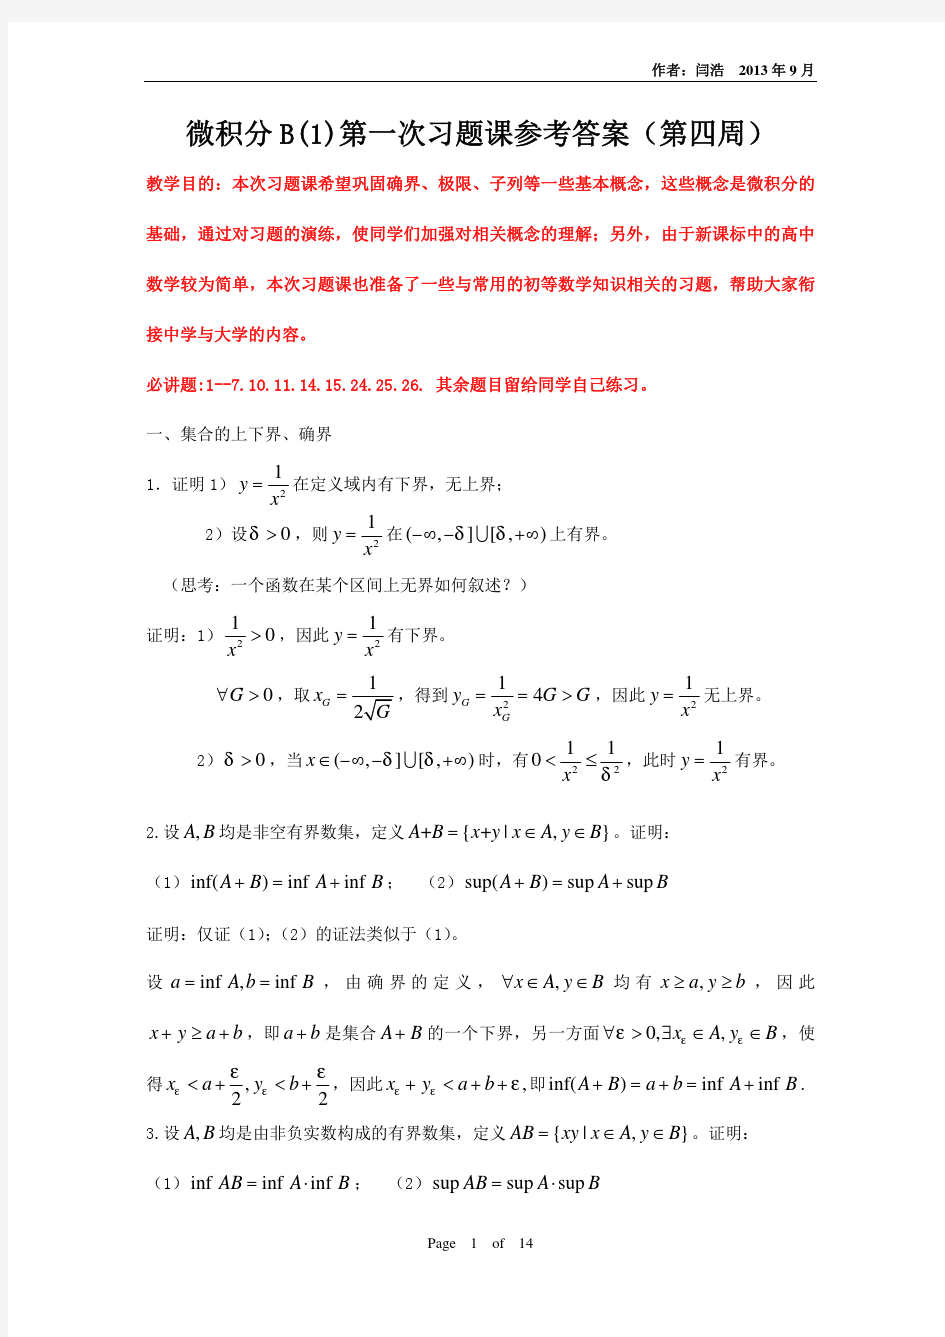 清华大学微积分B(1)第1次习题课答案(确界、极限、子列)